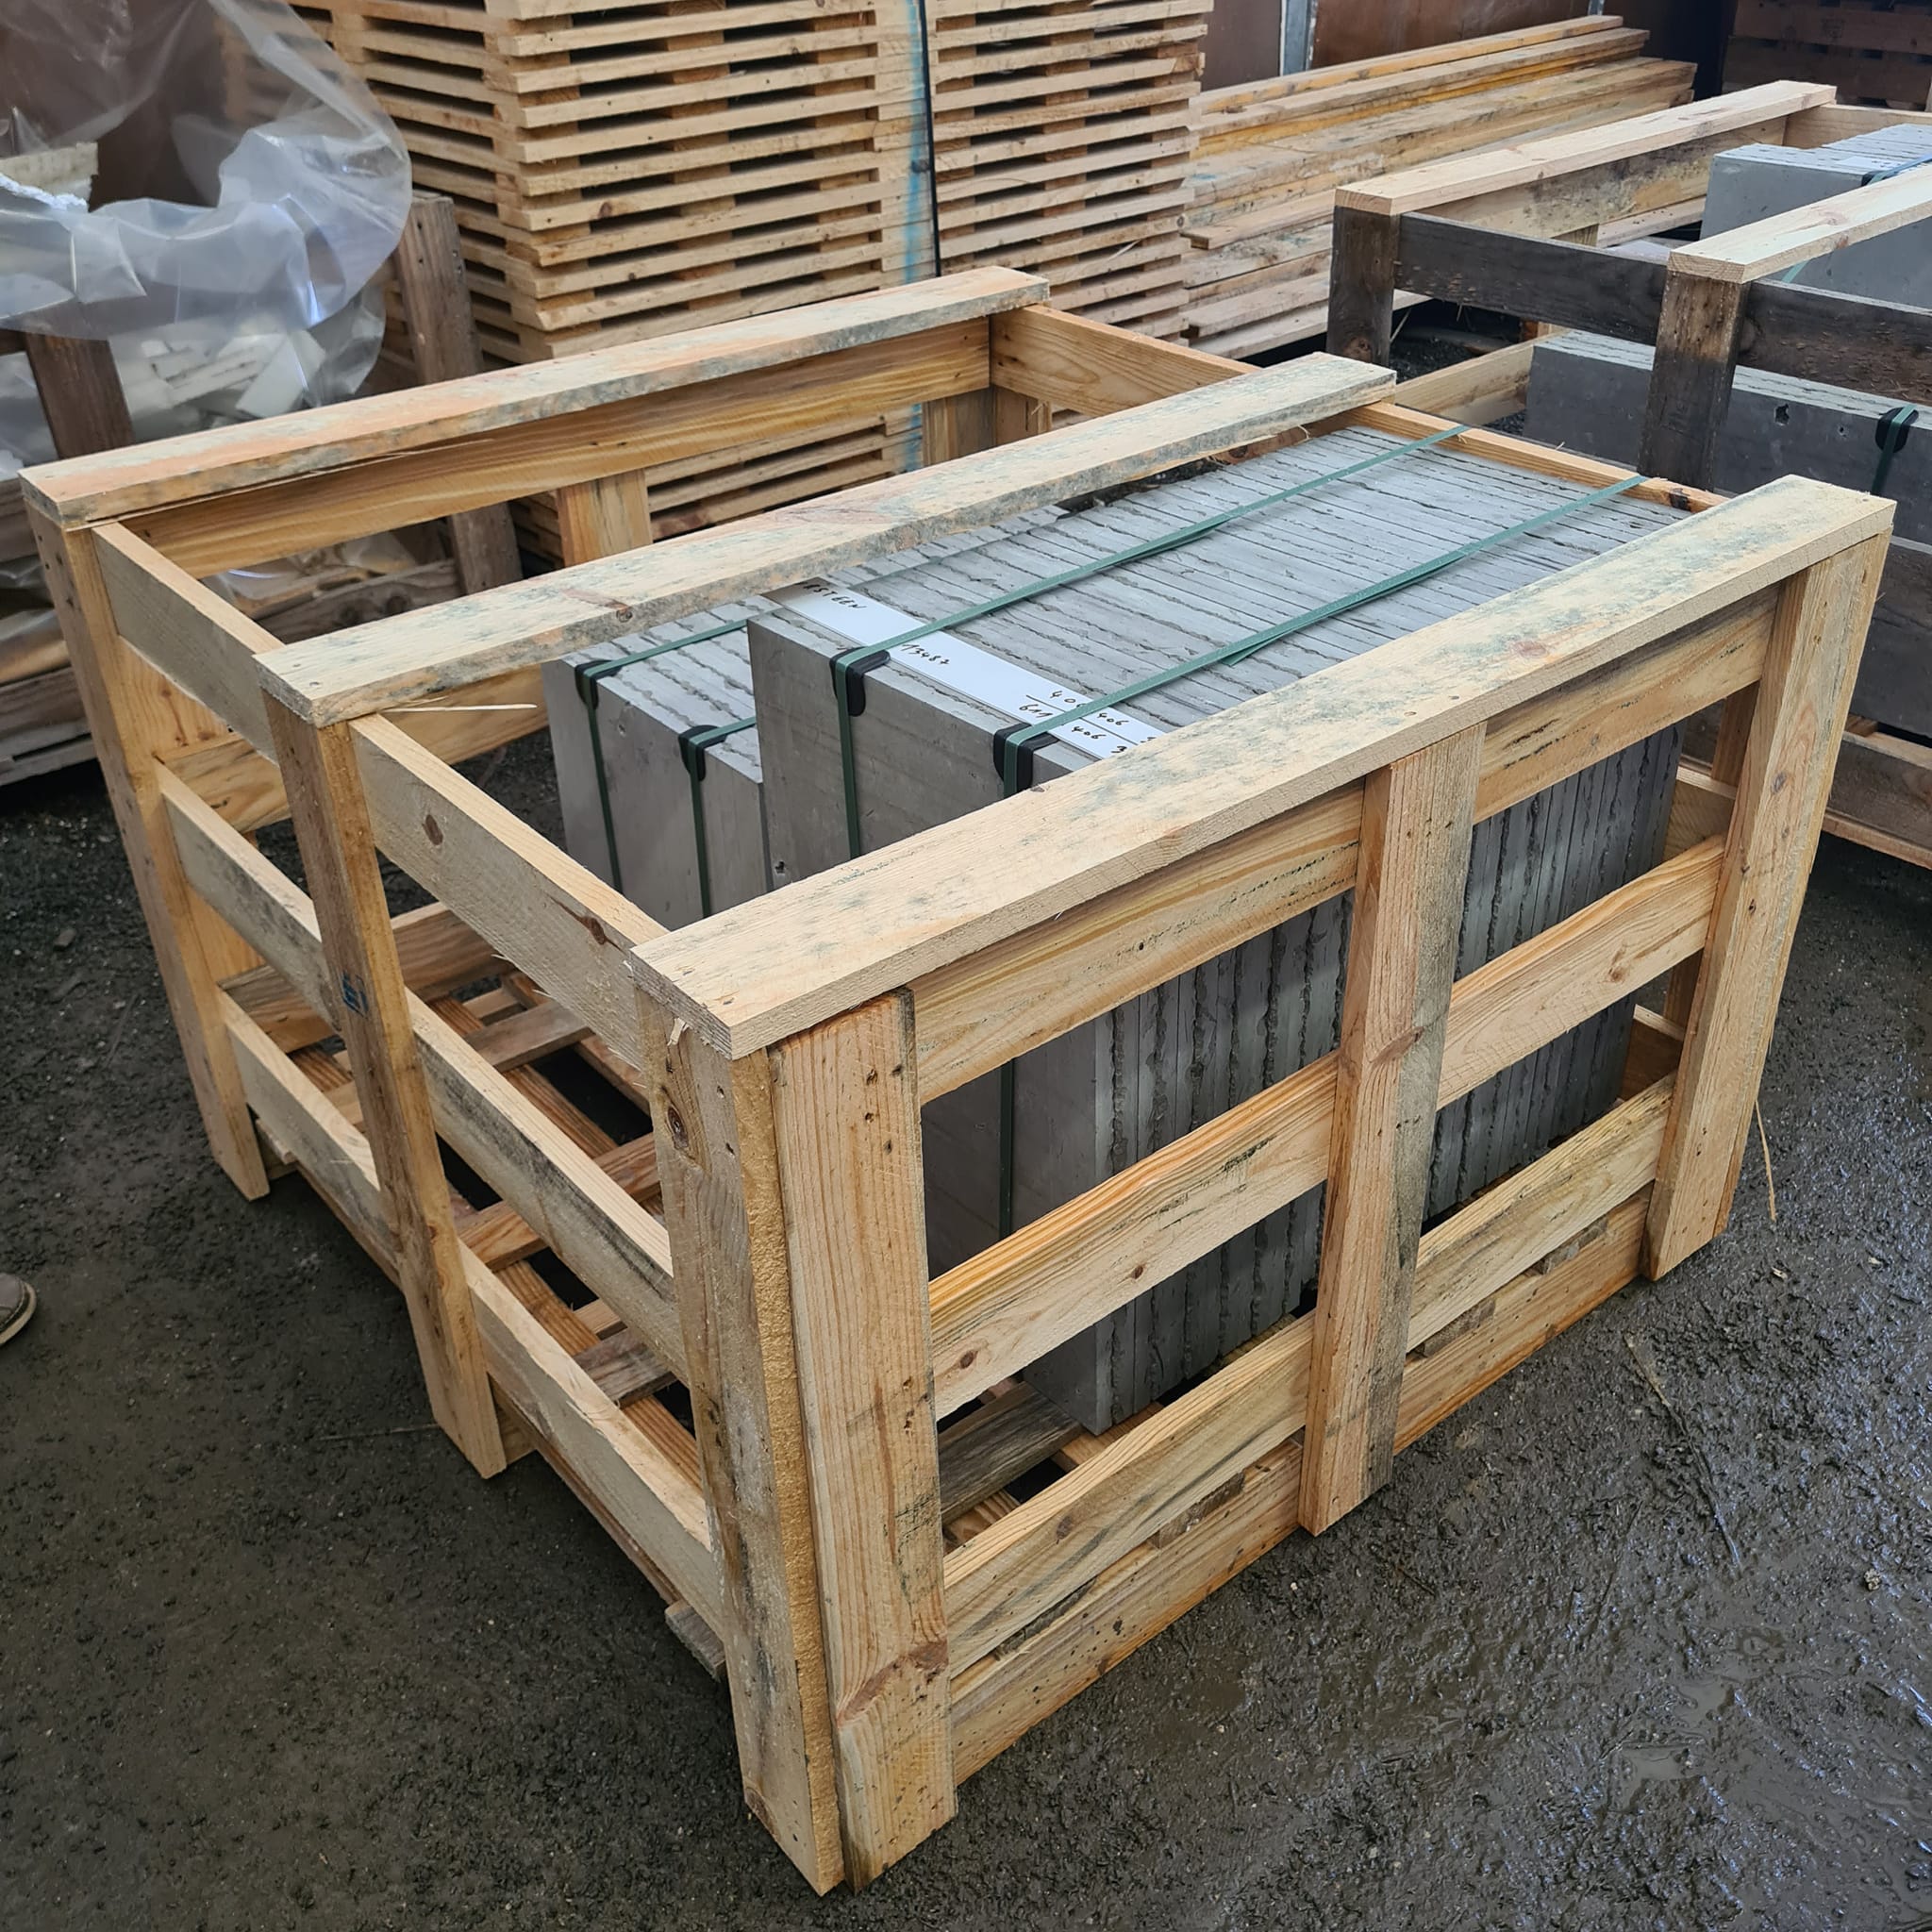 Transformation du bois de palette en caisse de transport et protection en bois